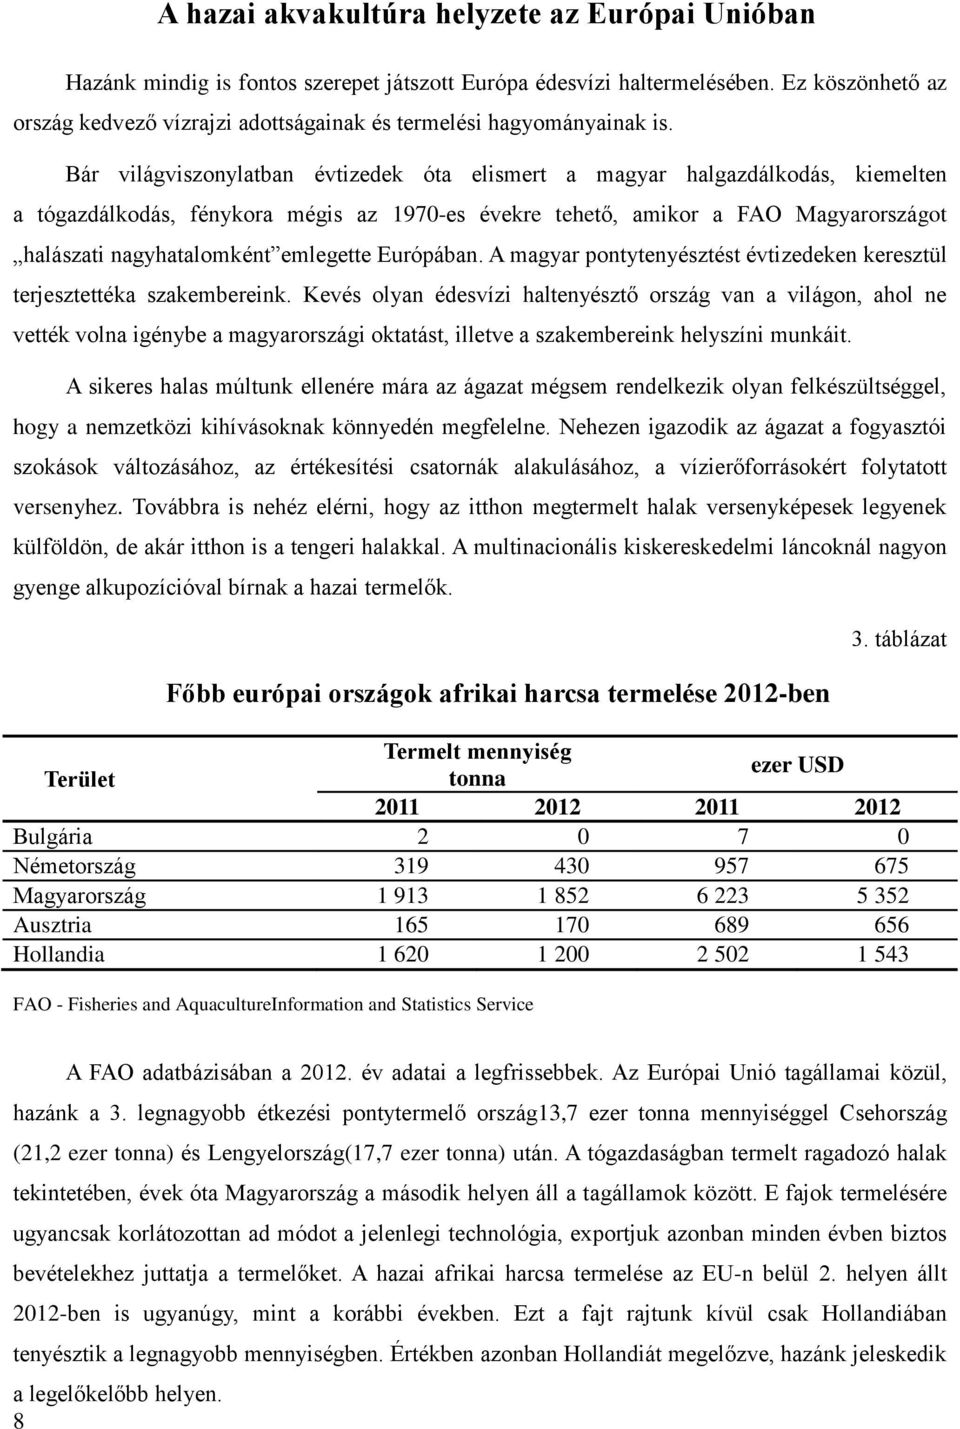 Bár világviszonylatban évtizedek óta elismert a magyar halgazdálkodás, kiemelten a tógazdálkodás, fénykora mégis az 1970-es évekre tehető, amikor a FAO Magyarországot halászati nagyhatalomként